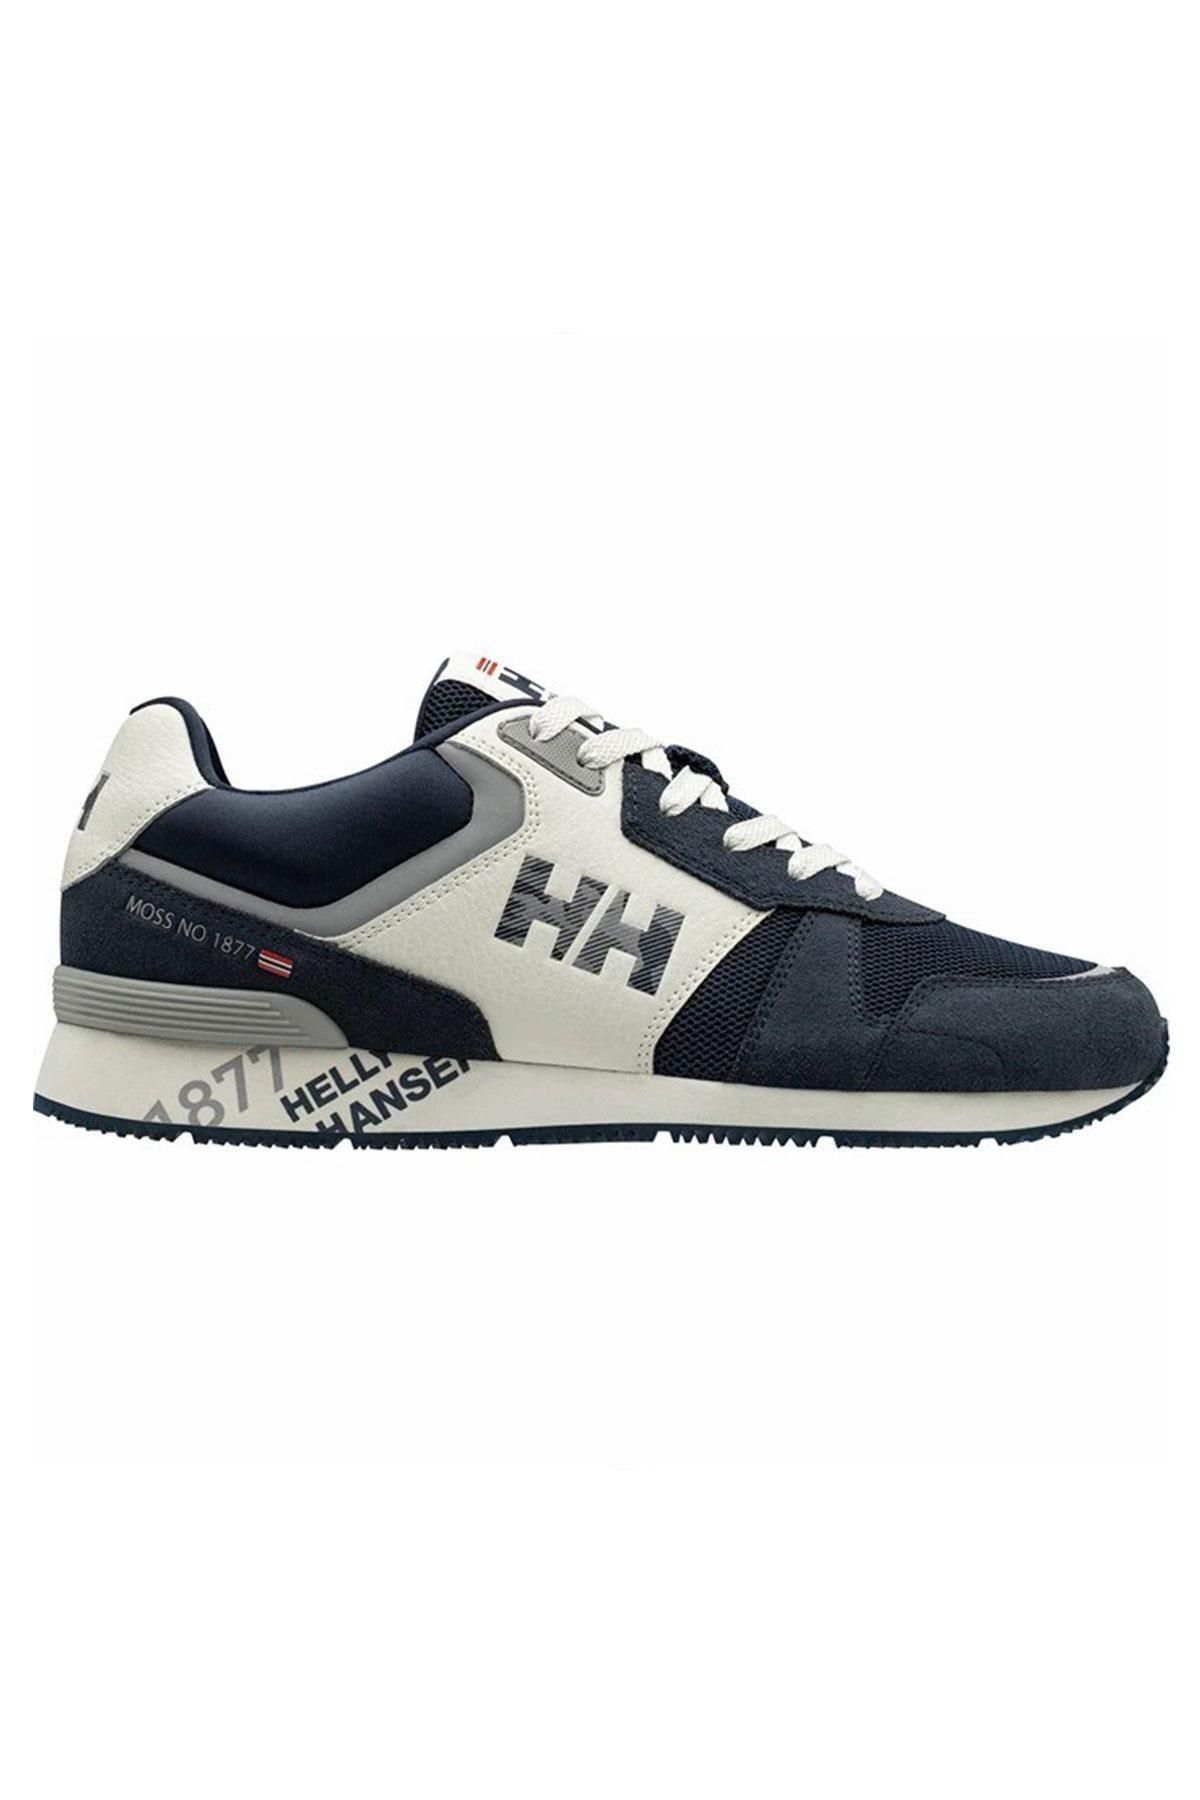 Helly Hansen Hha.11718 - Anakin Leather Günlük Spor Ayakkabı